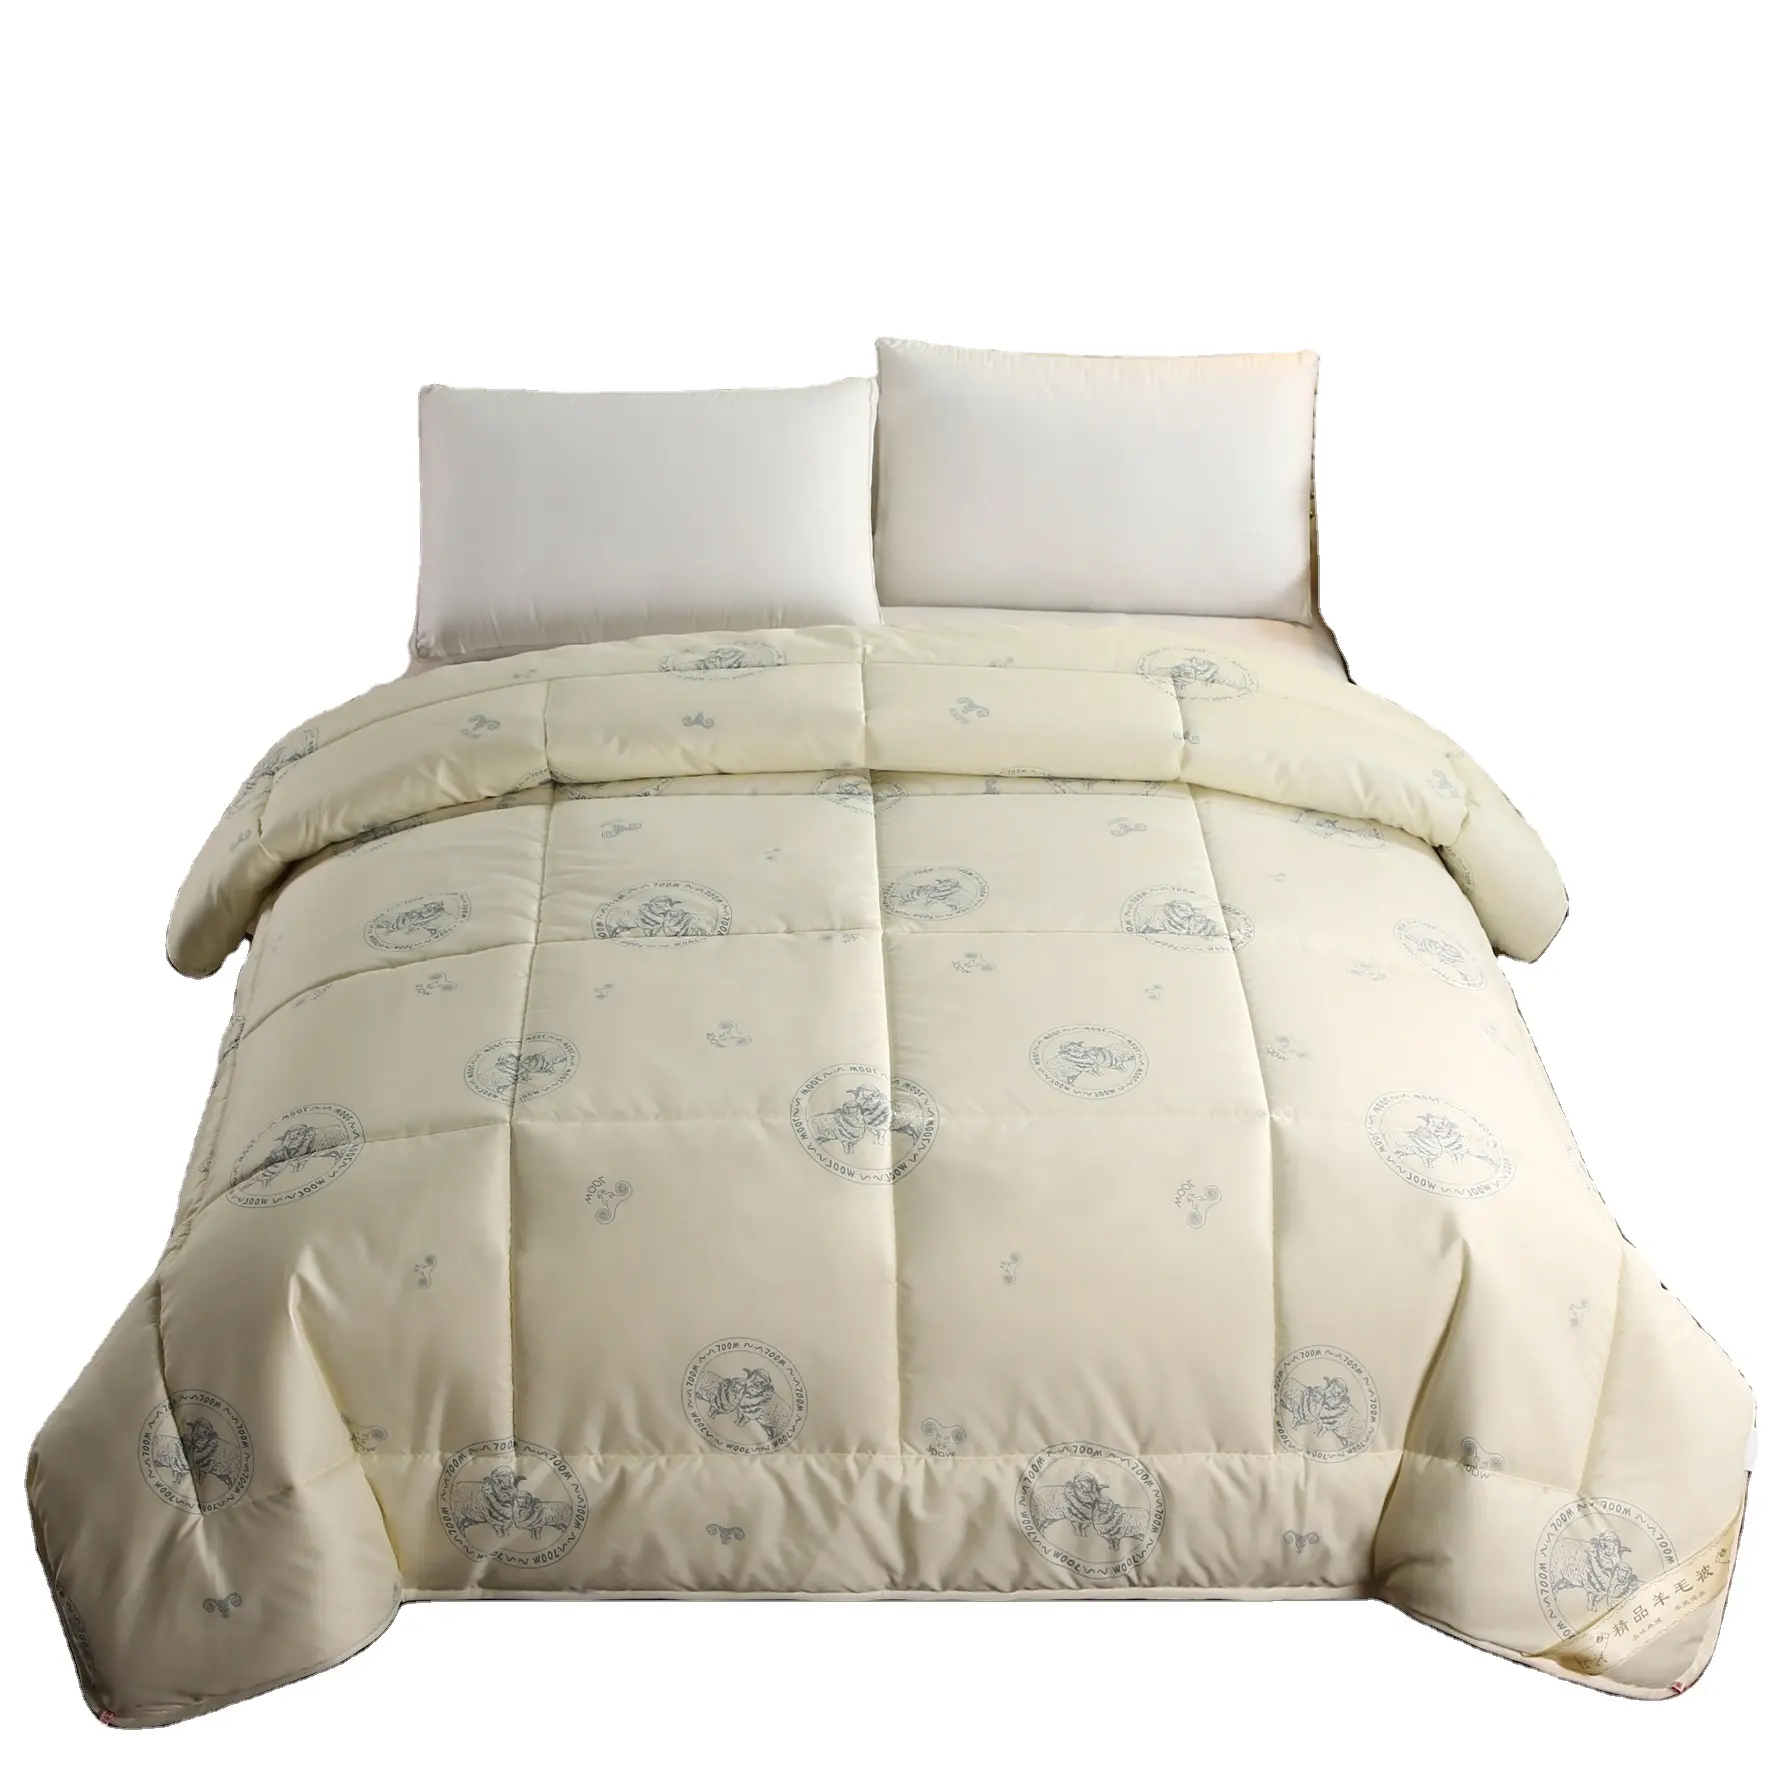 MOONZ Couvre-lits rembourrés en laine australienne respirante imprimée pour l'hiver Couvre-lits couettes, en stock Couettes chaudes pour l'hiver